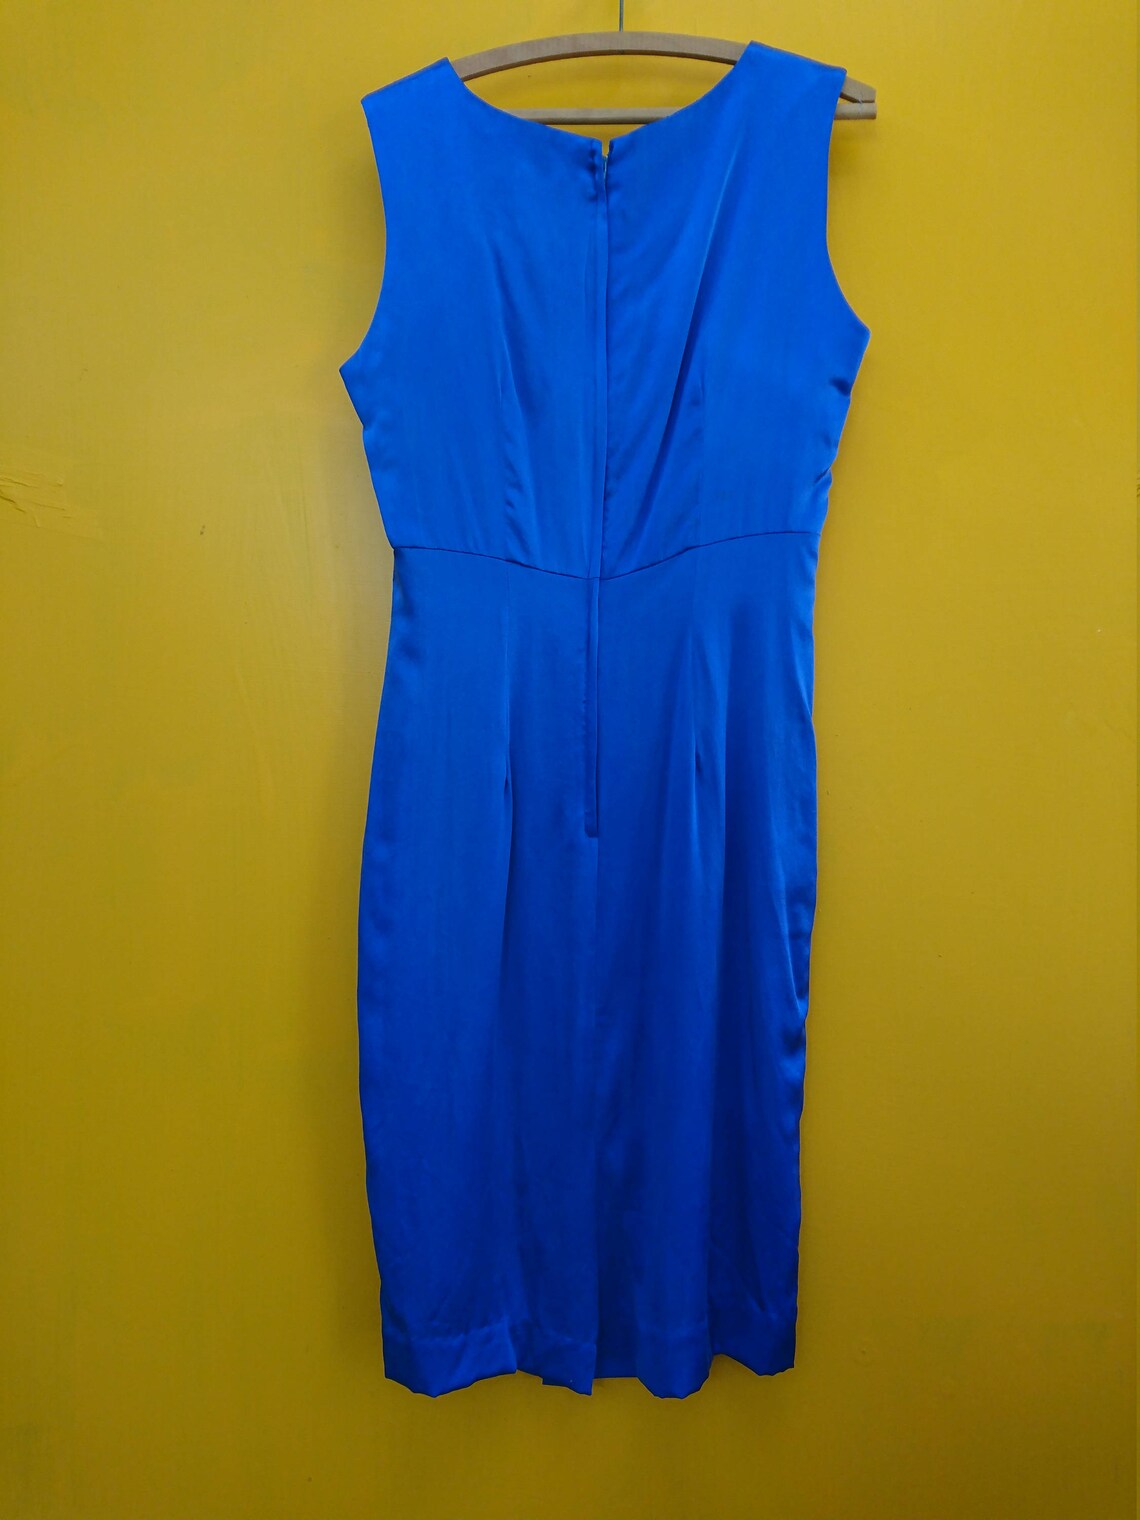 Vintage Silk Dress Suit Blue 90s Era Size 10: A cute retro | Etsy